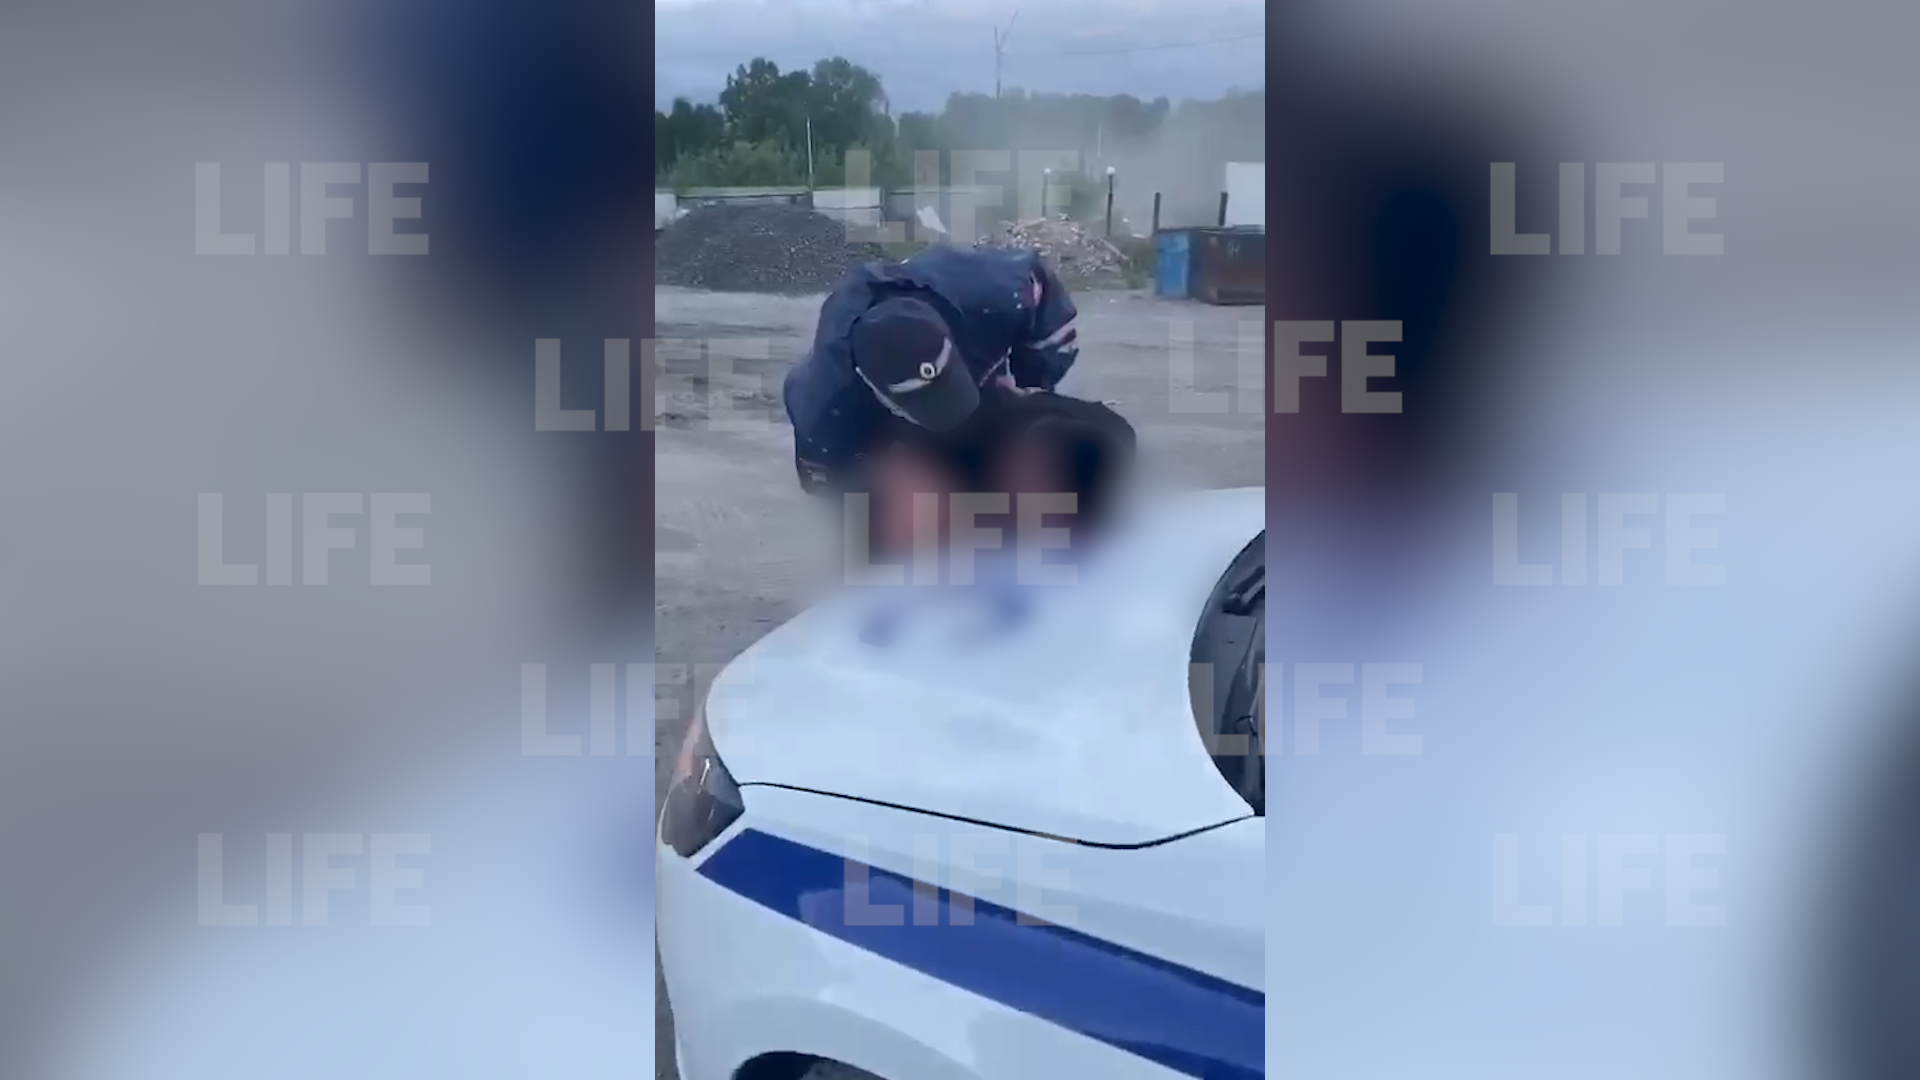 "Ты его потушил": Под Новосибирском сотрудник ДПС случайно выстрелил в голову 19-летнему парню при задержании